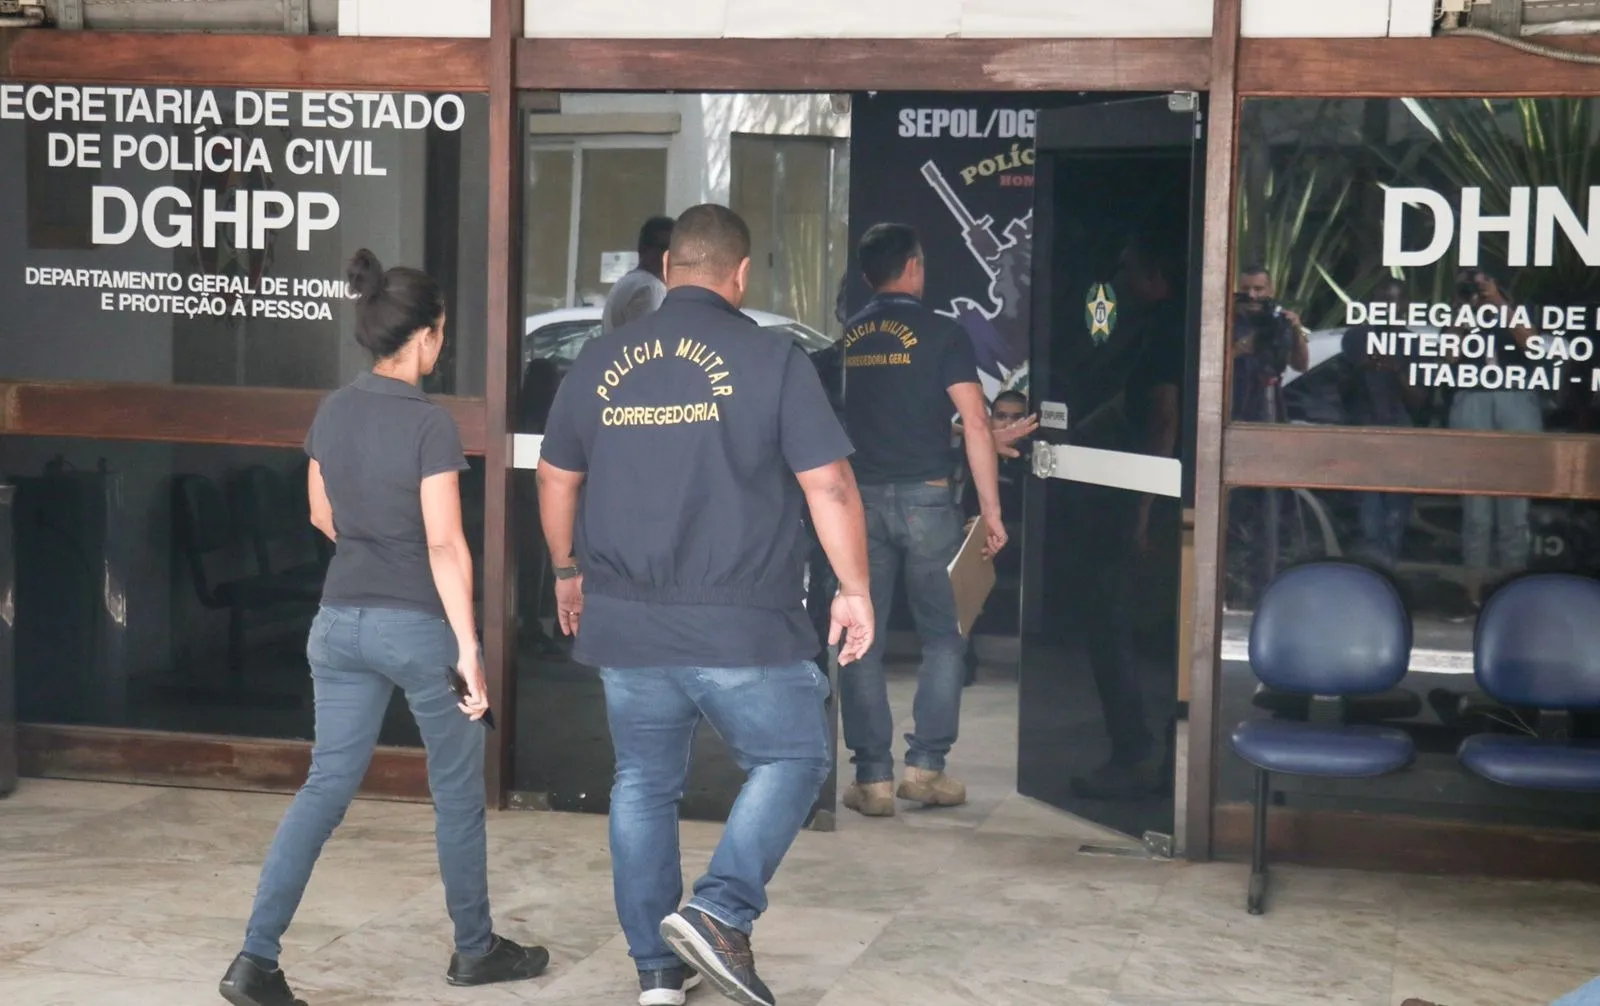 Agentes da Corregedoria não quiseram falar com a imprensa